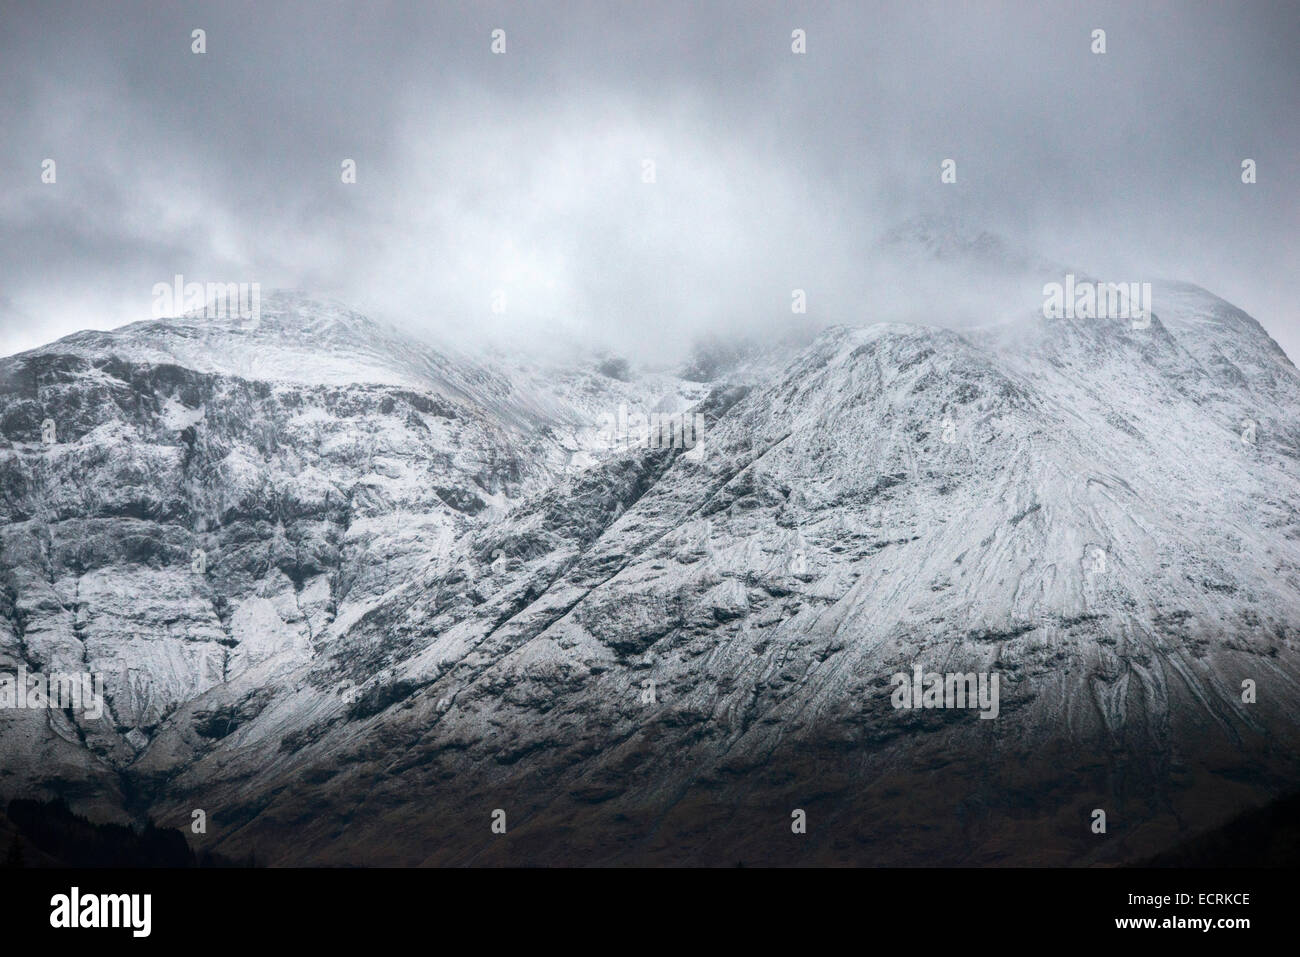 Berge rund um Loch Leven in Glencoe, Highlands Scotland UK Stockfoto